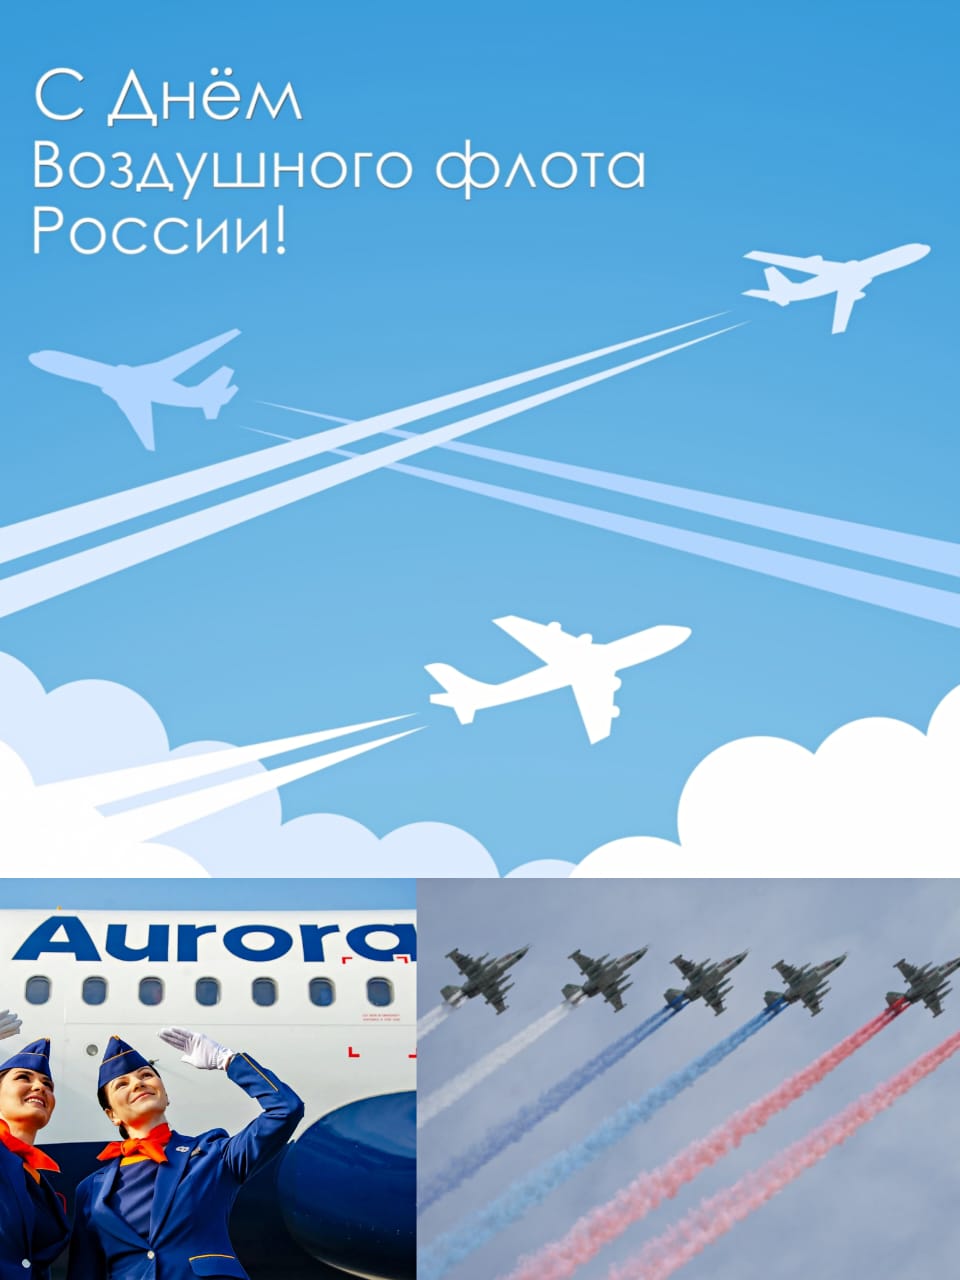 Примите искренние поздравления с профессиональным праздником – Днем воздушного флота России